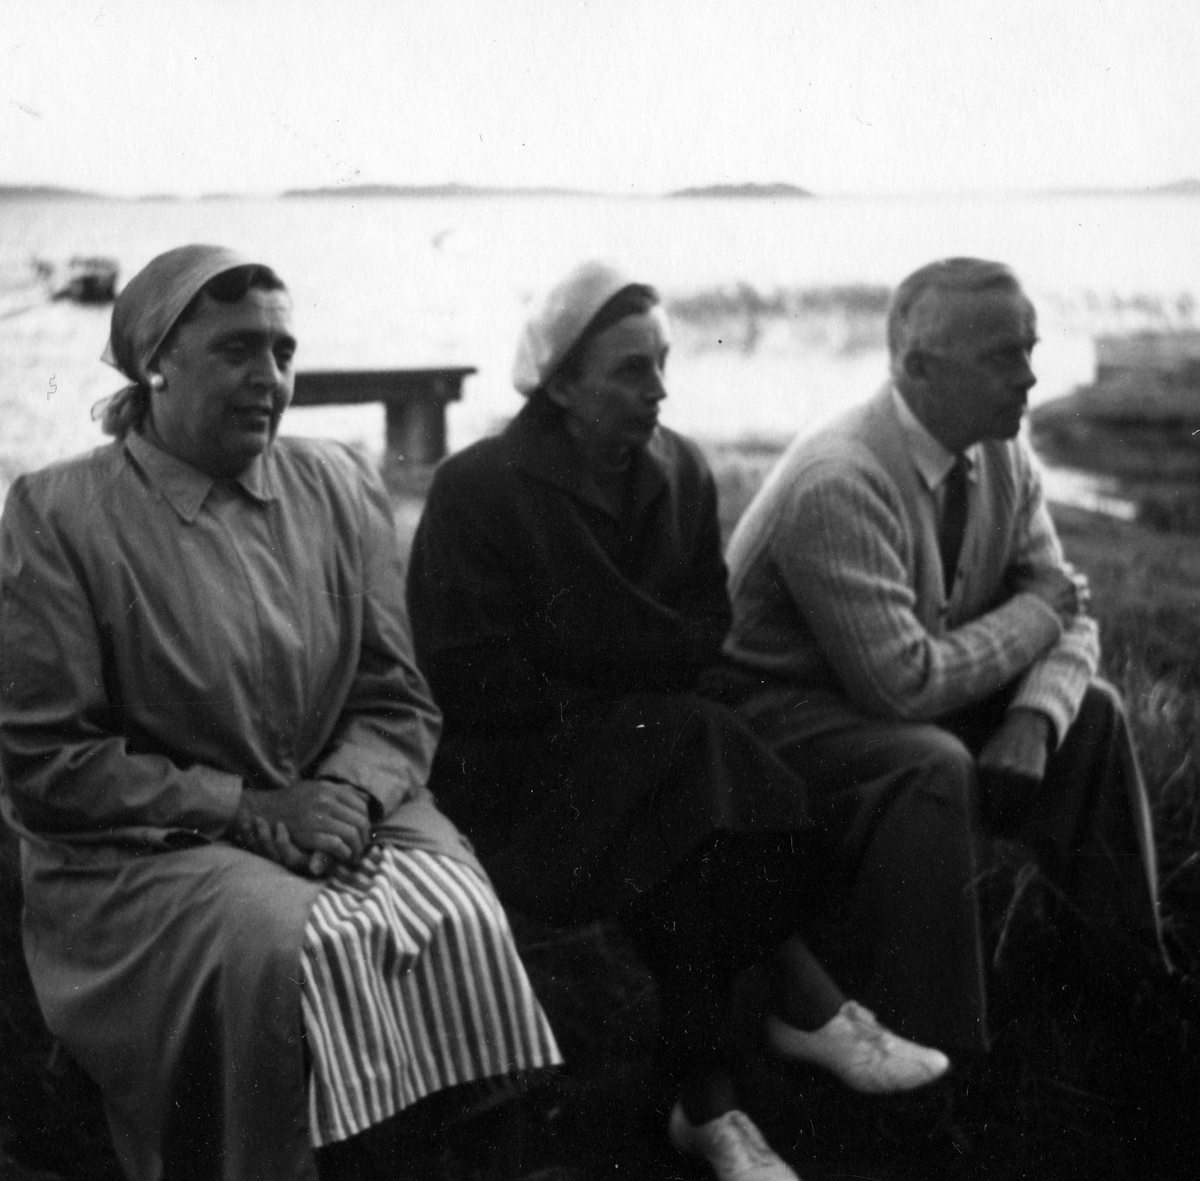 Årsmöte vid en strandkant där två kvinnor och en man sitter på en bänk. Anteckning på kortets baksida "Årsmöte 1954".